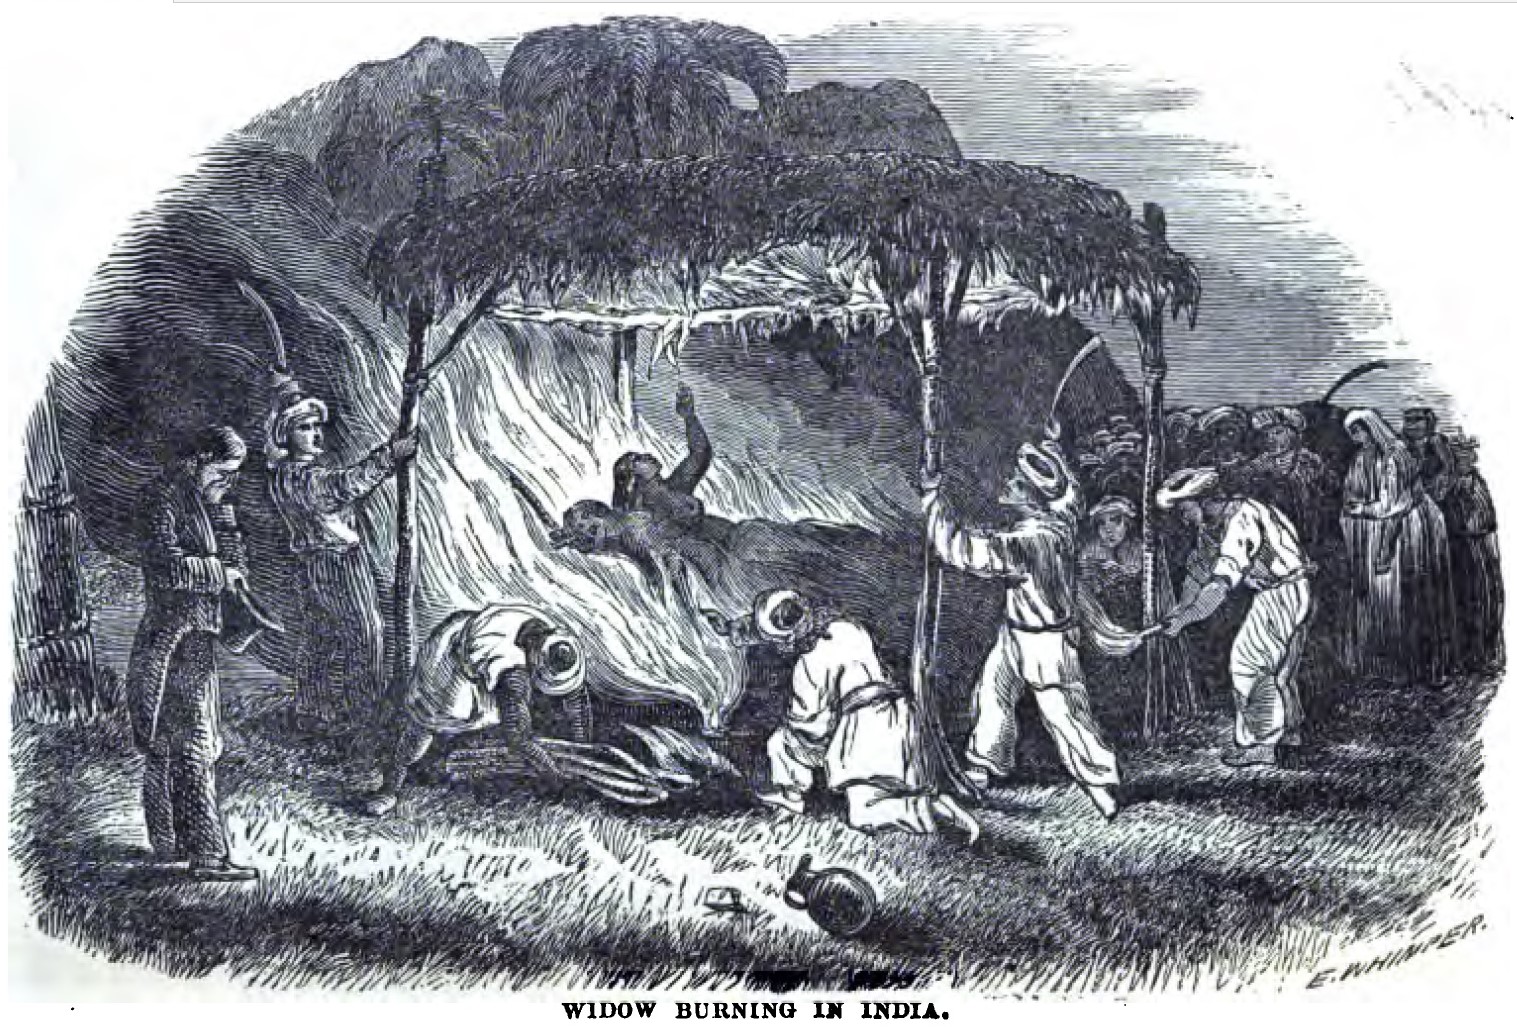 Özvegyégetés Indiában, a 19. század közepén (forrás: Wikipedia)